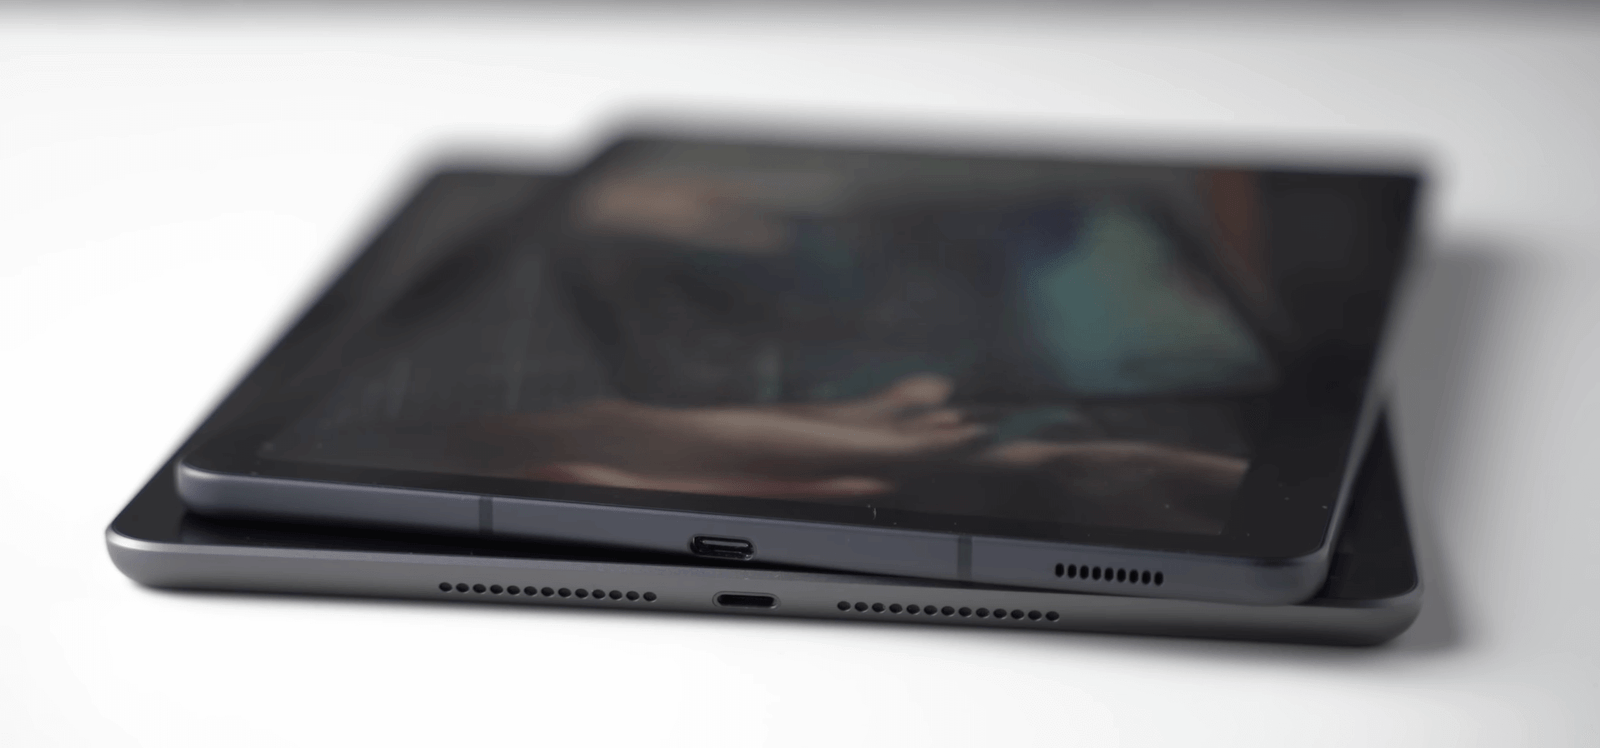 iPad 7th Gen 10.2 inch vs Galaxy Tab S6 Lite Charging port